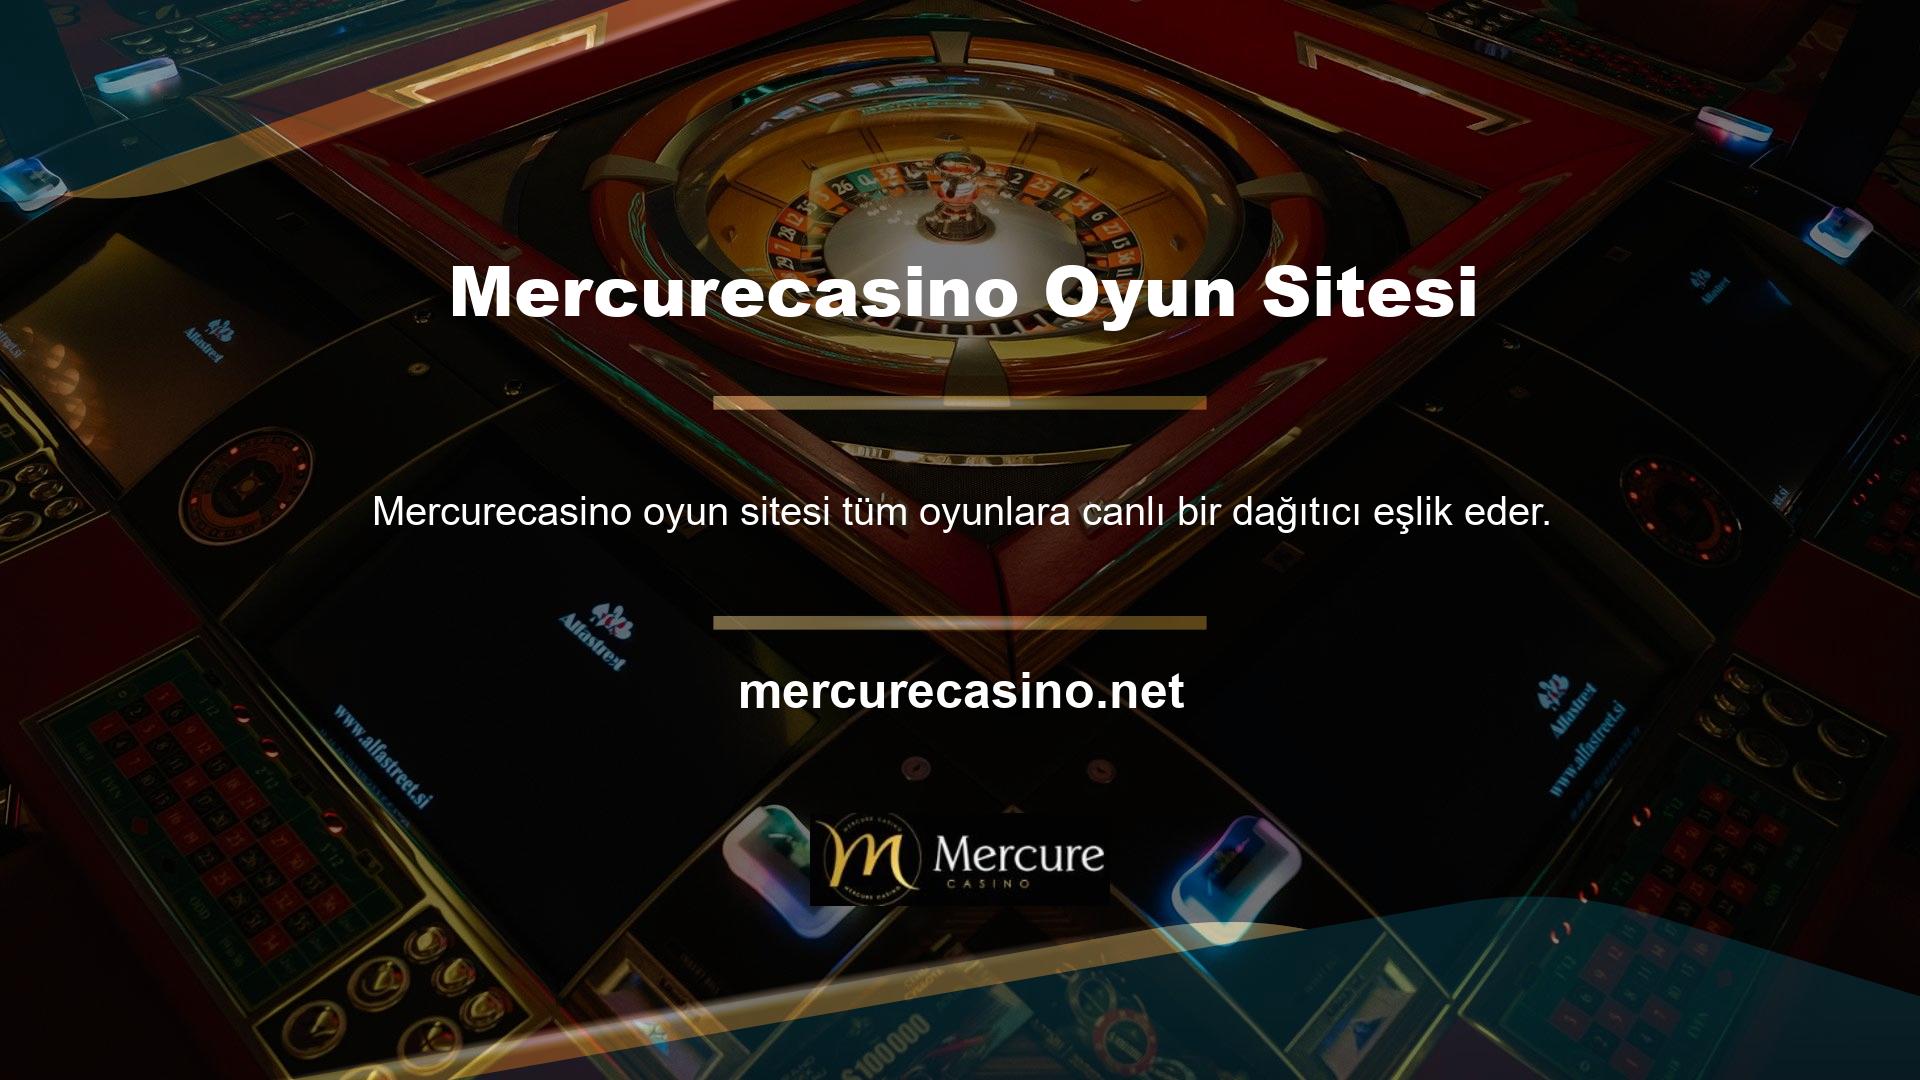 Şimdi Mercurecasino sitesindeki bonus slot şeklindeki yüzlerce Mercurecasino oyun seçeneğinden birini seçin ve tıklayın